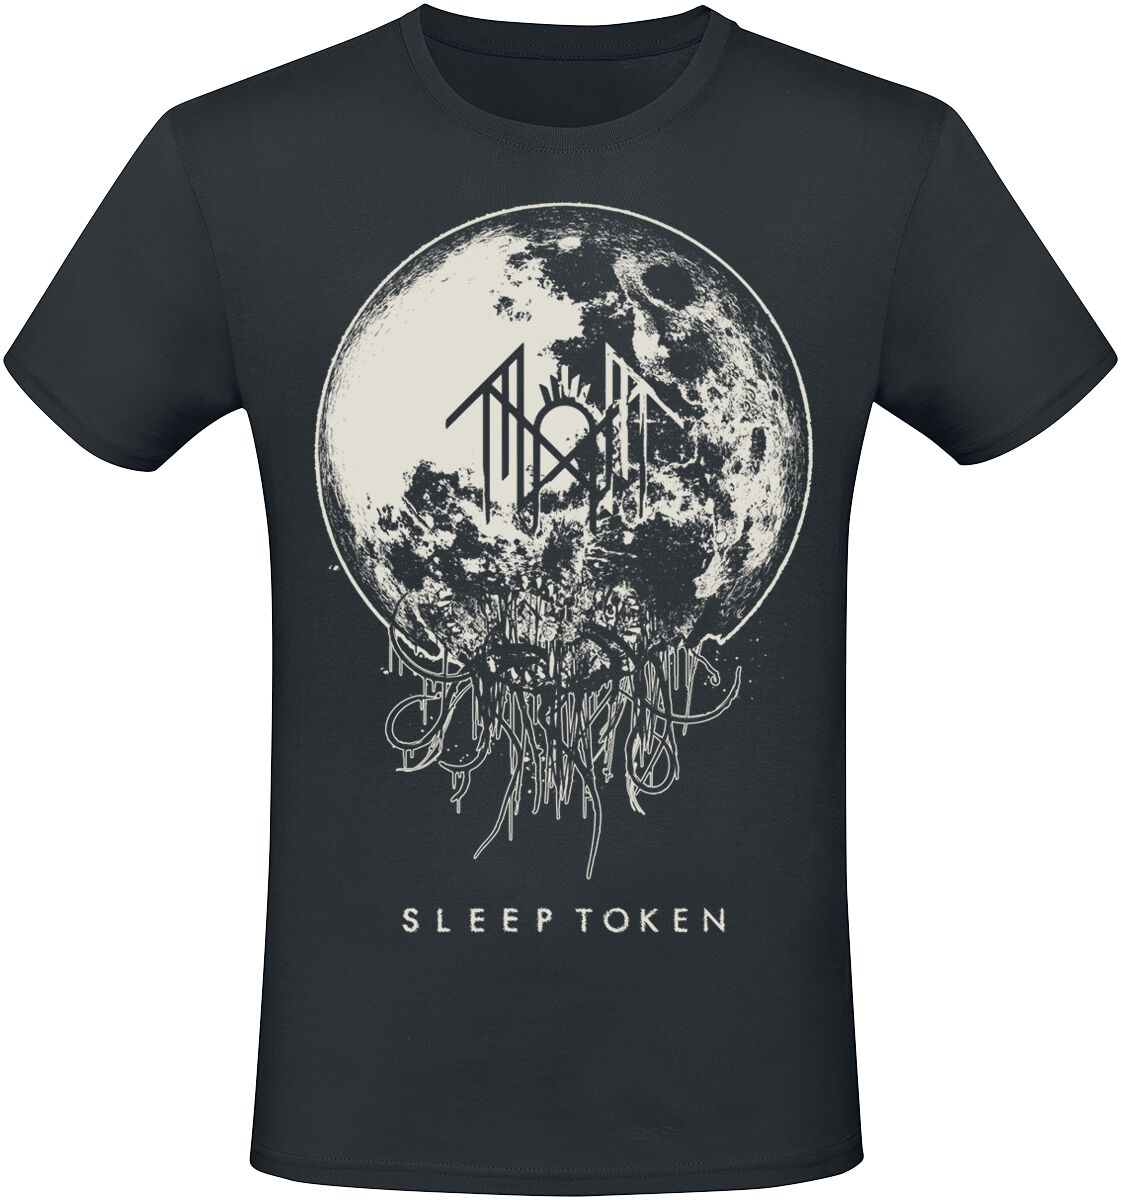 Sleep Token T-Shirt - Take Me Back To Eden - S bis 4XL - für Männer - Größe XL - schwarz  - EMP exklusives Merchandise!